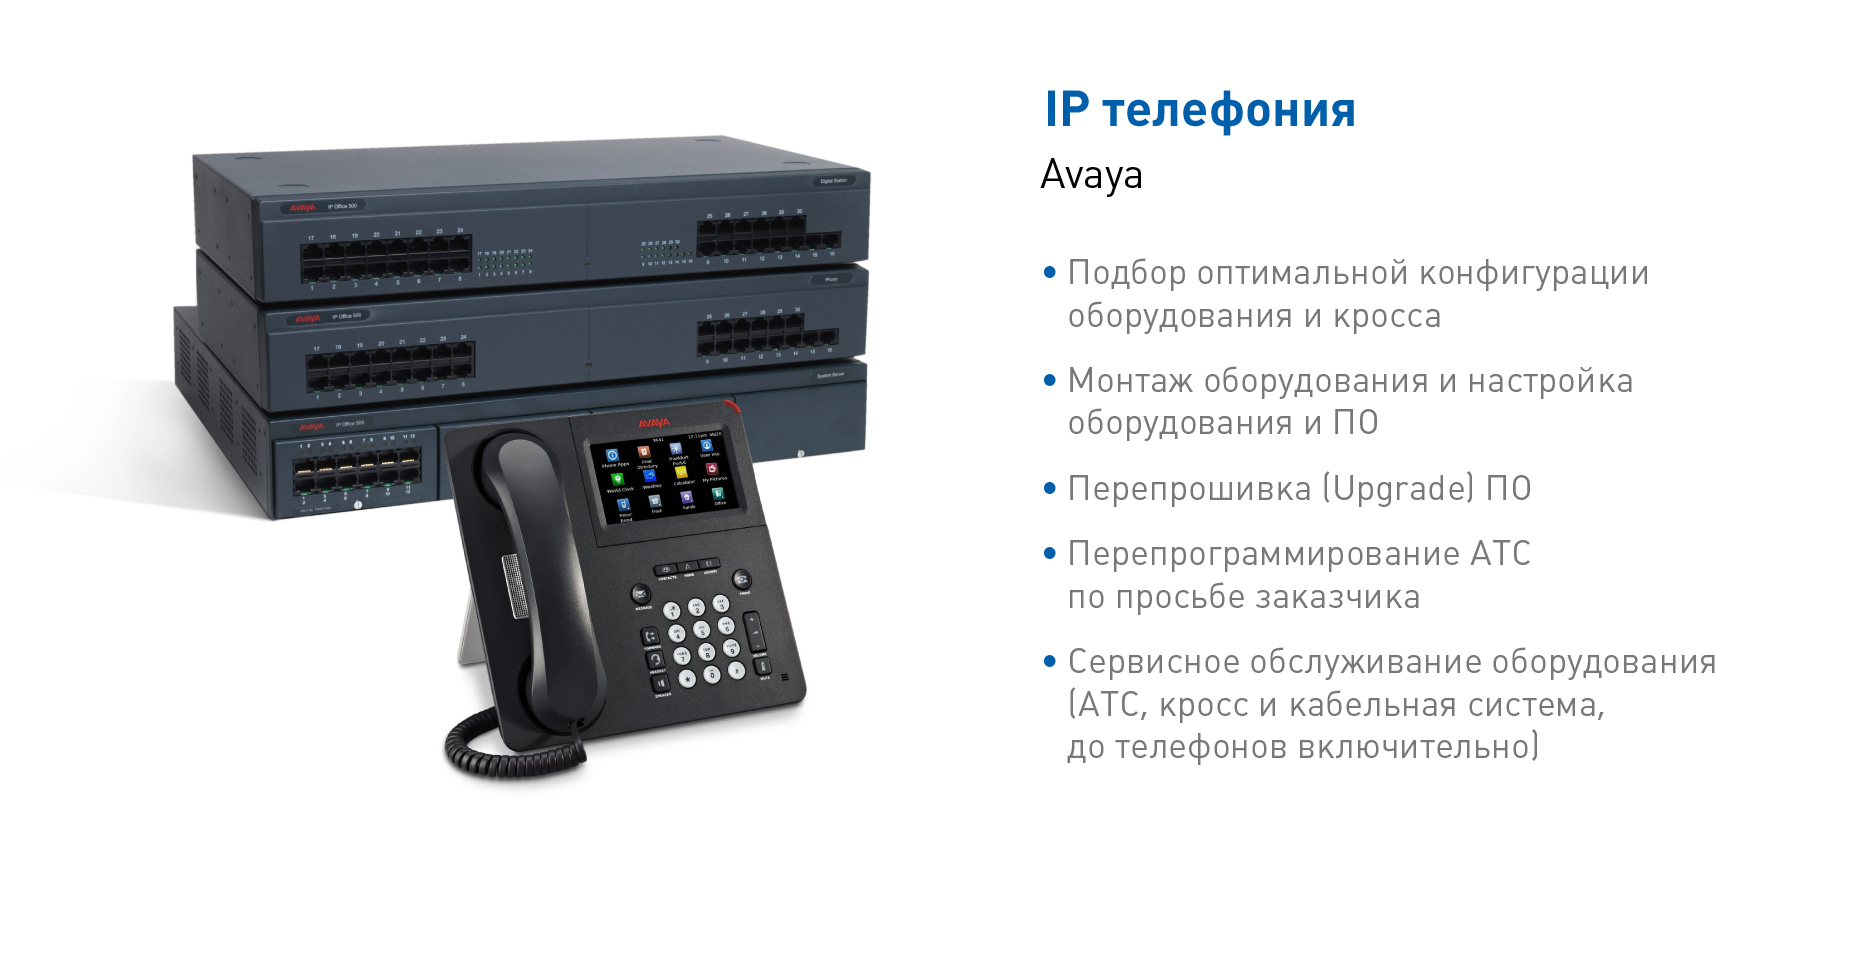 АТС и IP телефония Avaya